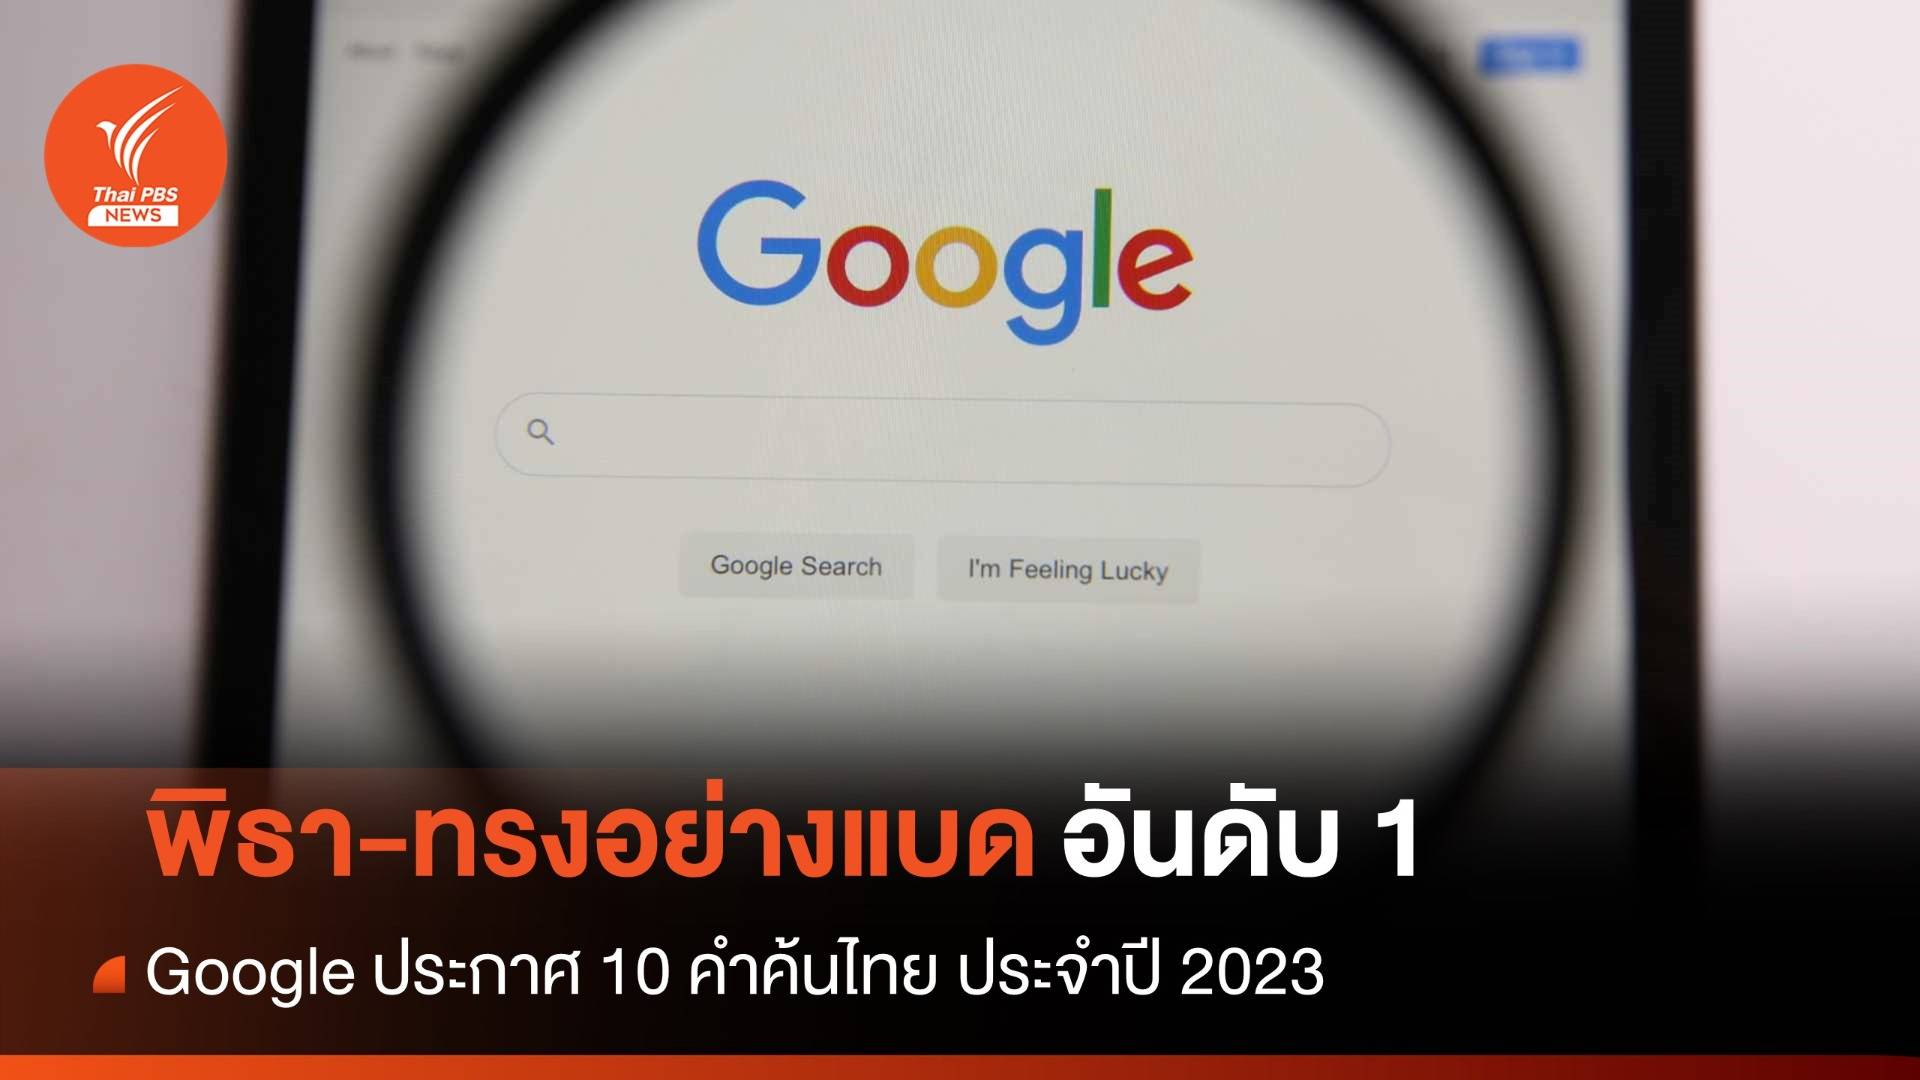 Google เปิดสุดยอดคำค้นหา 2023 "พิธา-ทรงอย่างแบด" ขึ้นอันดับ 1